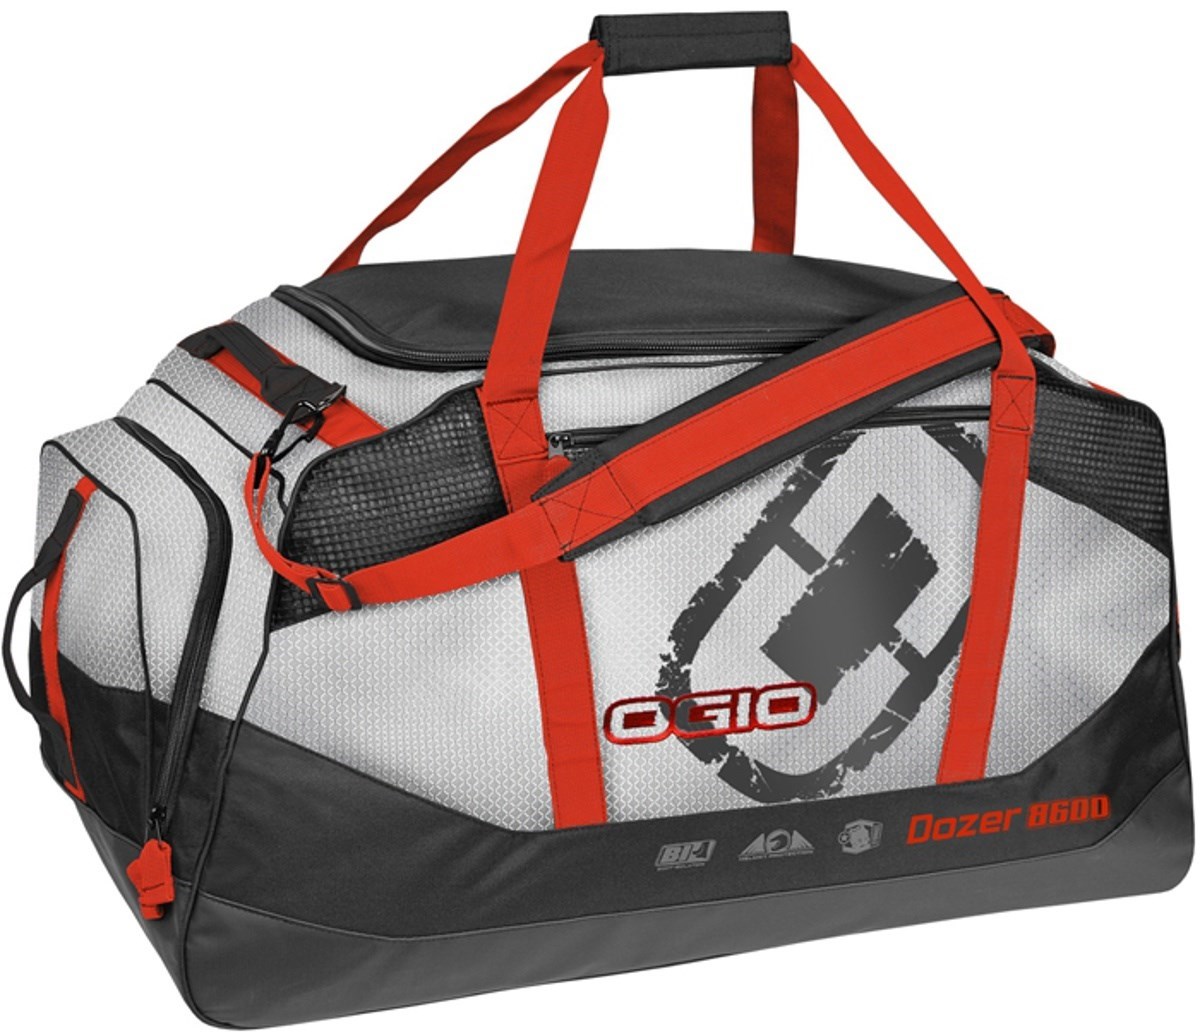 Ogio Dozer 8600 Holdall Bag product image